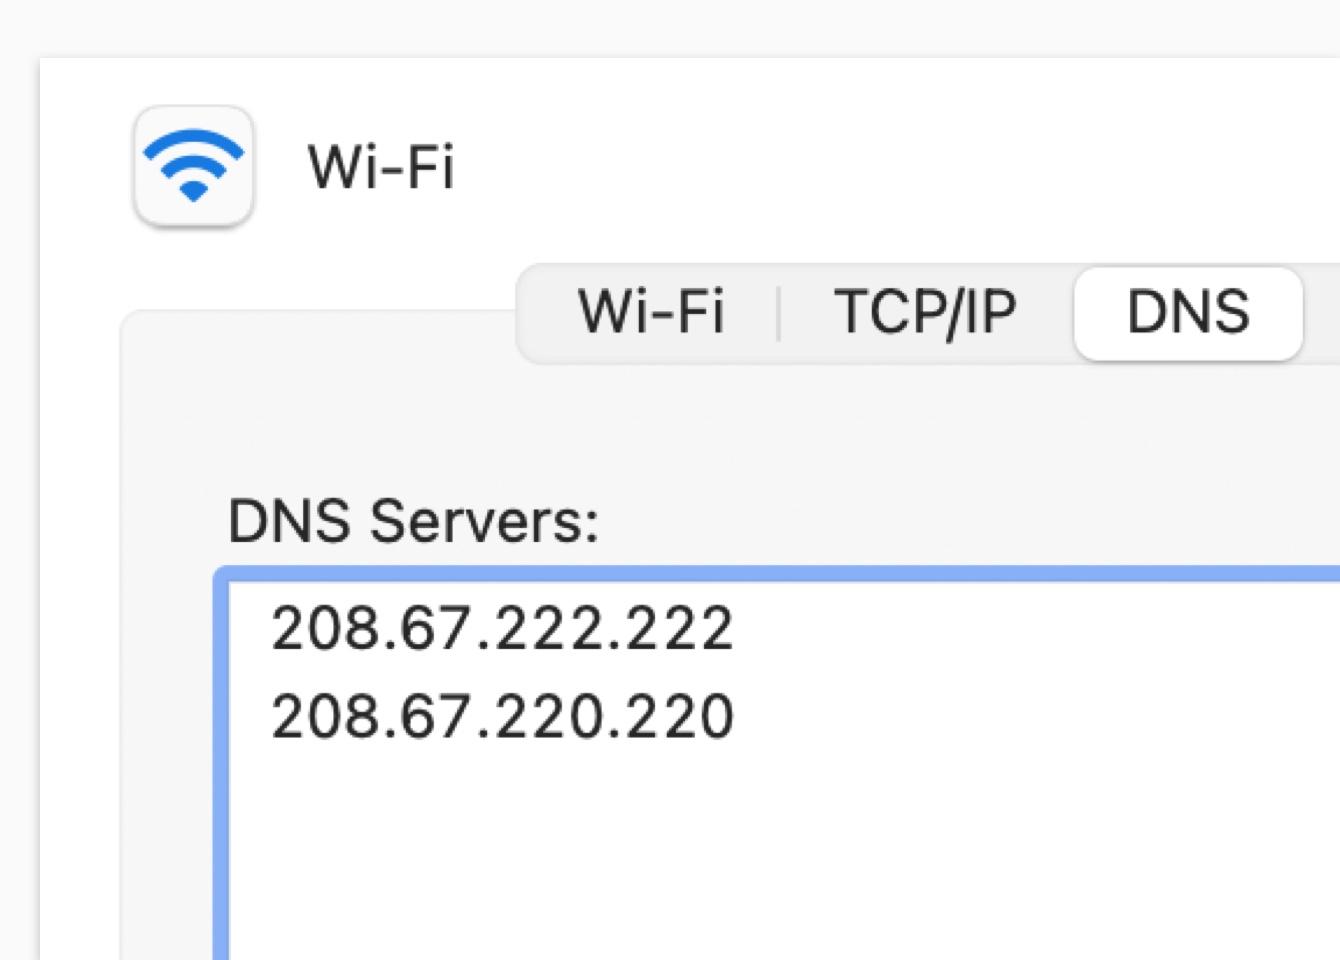 Introduzca las direcciones del servidor DNS de su elección.